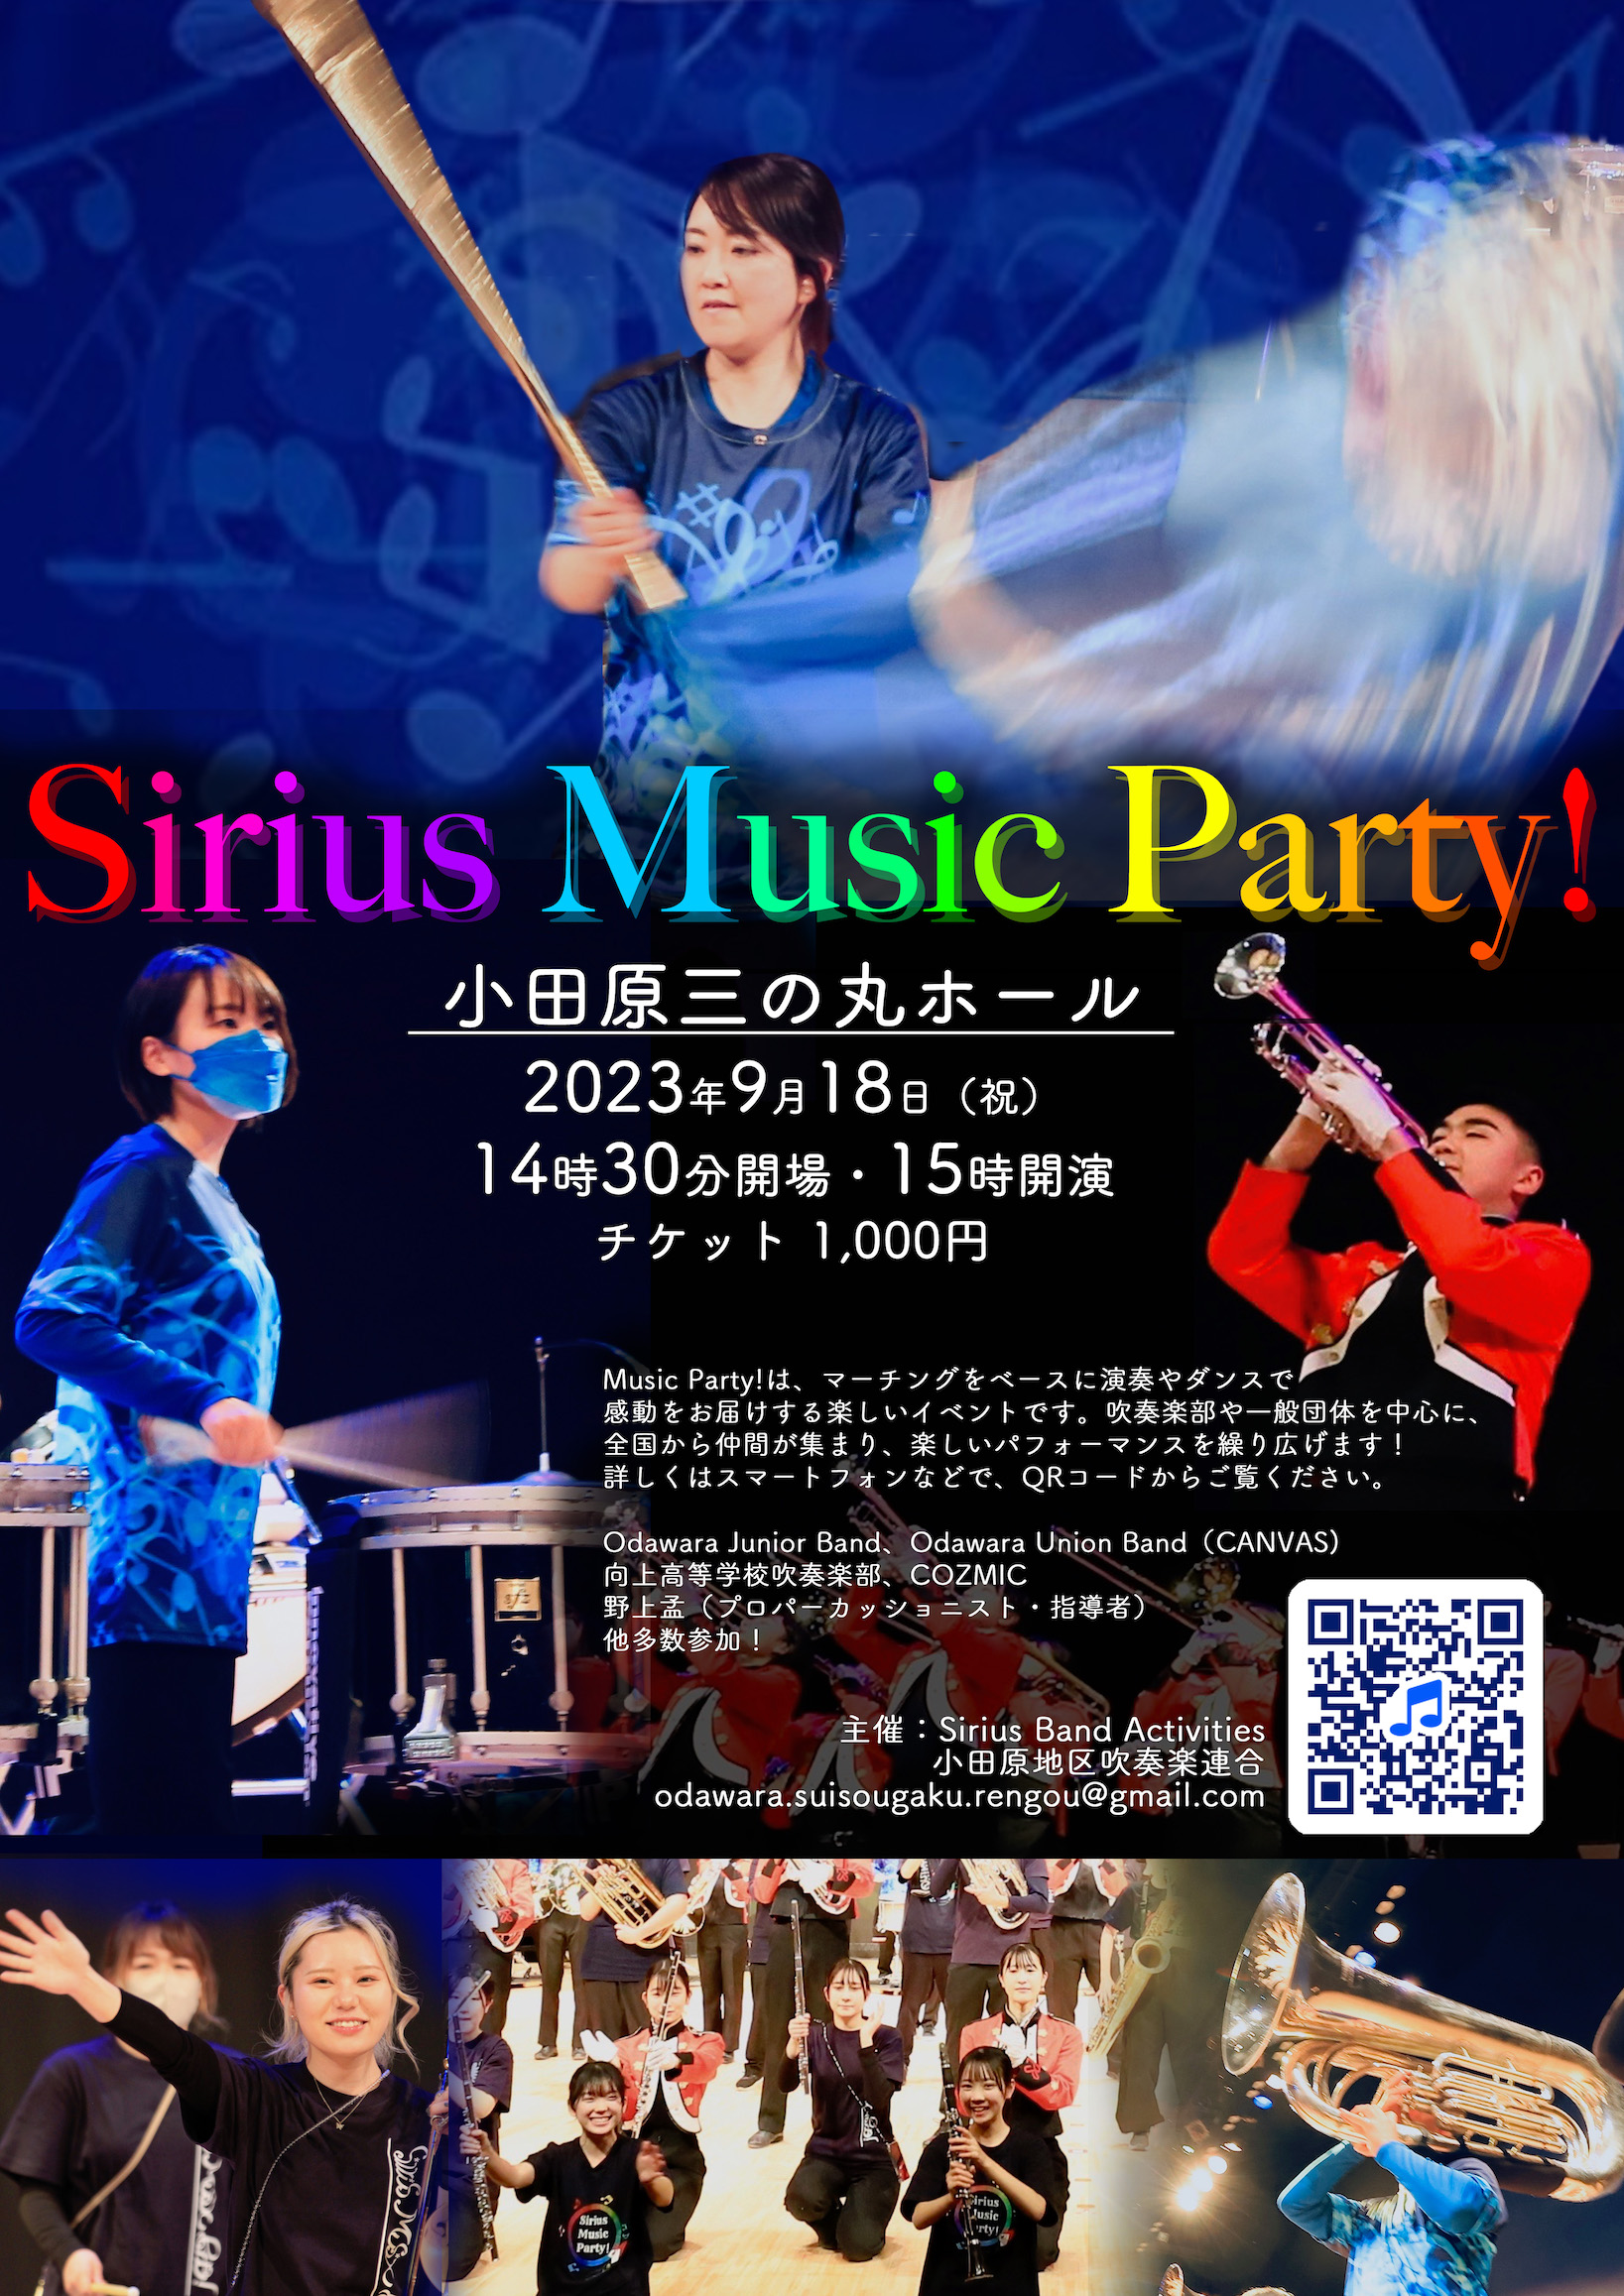 2023 Sirius Music Party! in ODAWARA